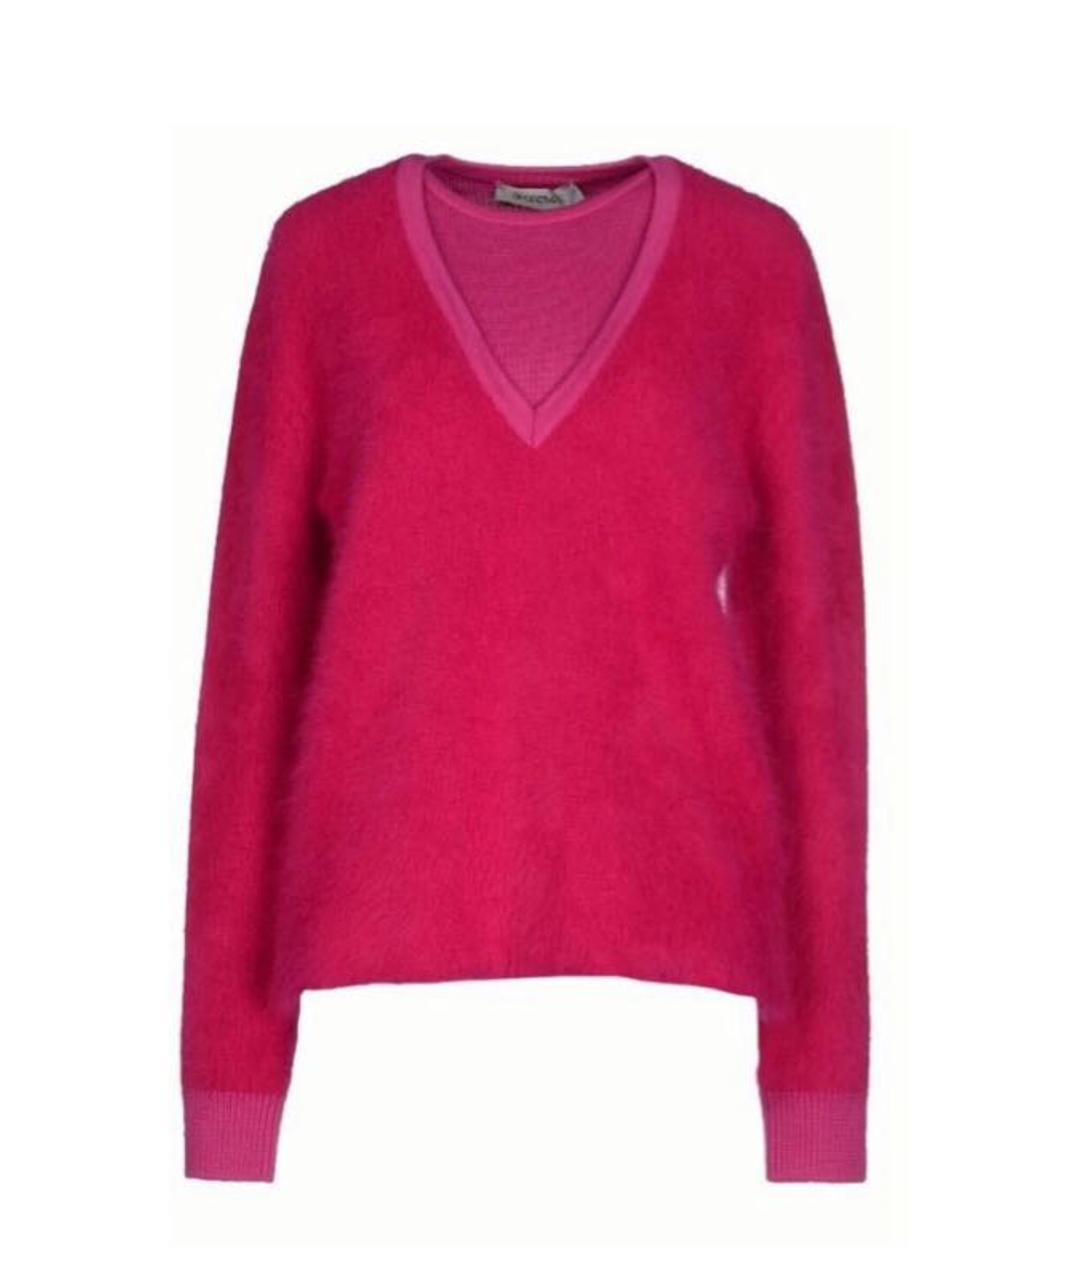 SPORTMAX Розовый шерстяной джемпер / свитер, фото 1